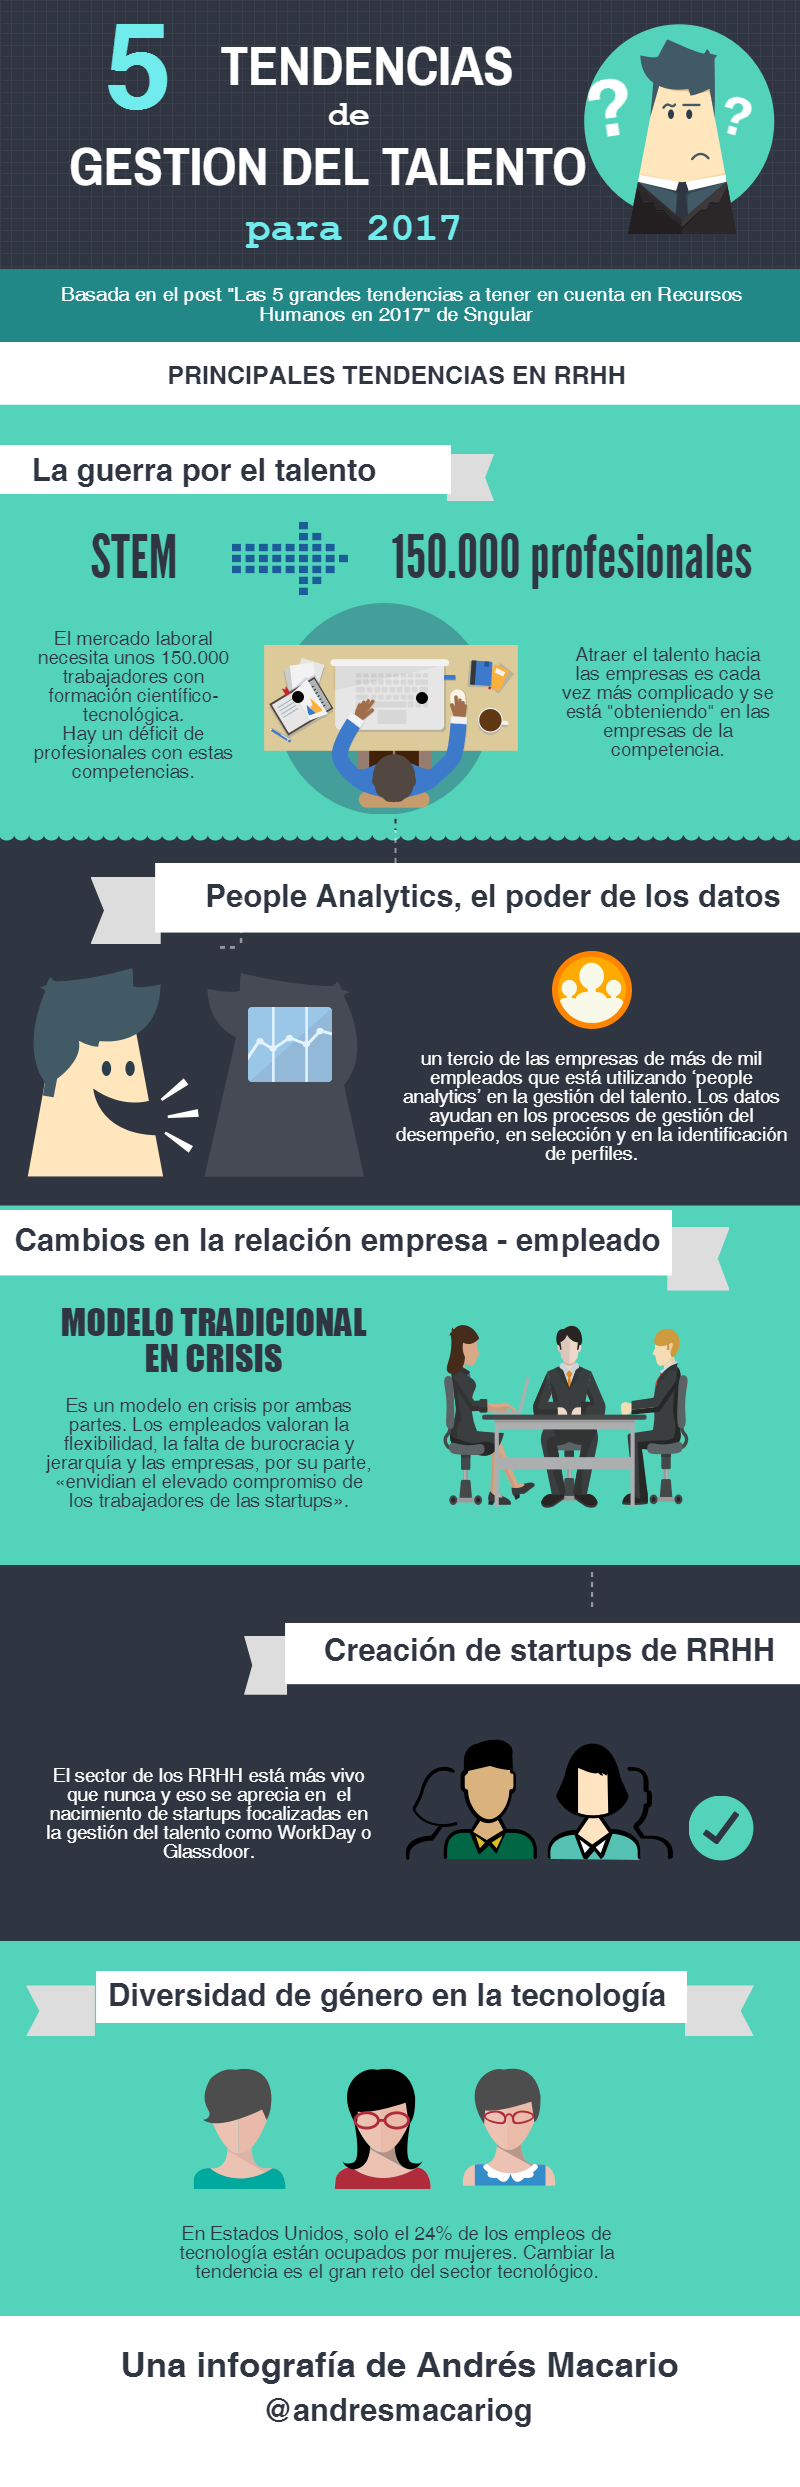 5 tendencias en gestion del talento para 2017- Infografia de Andres Macario